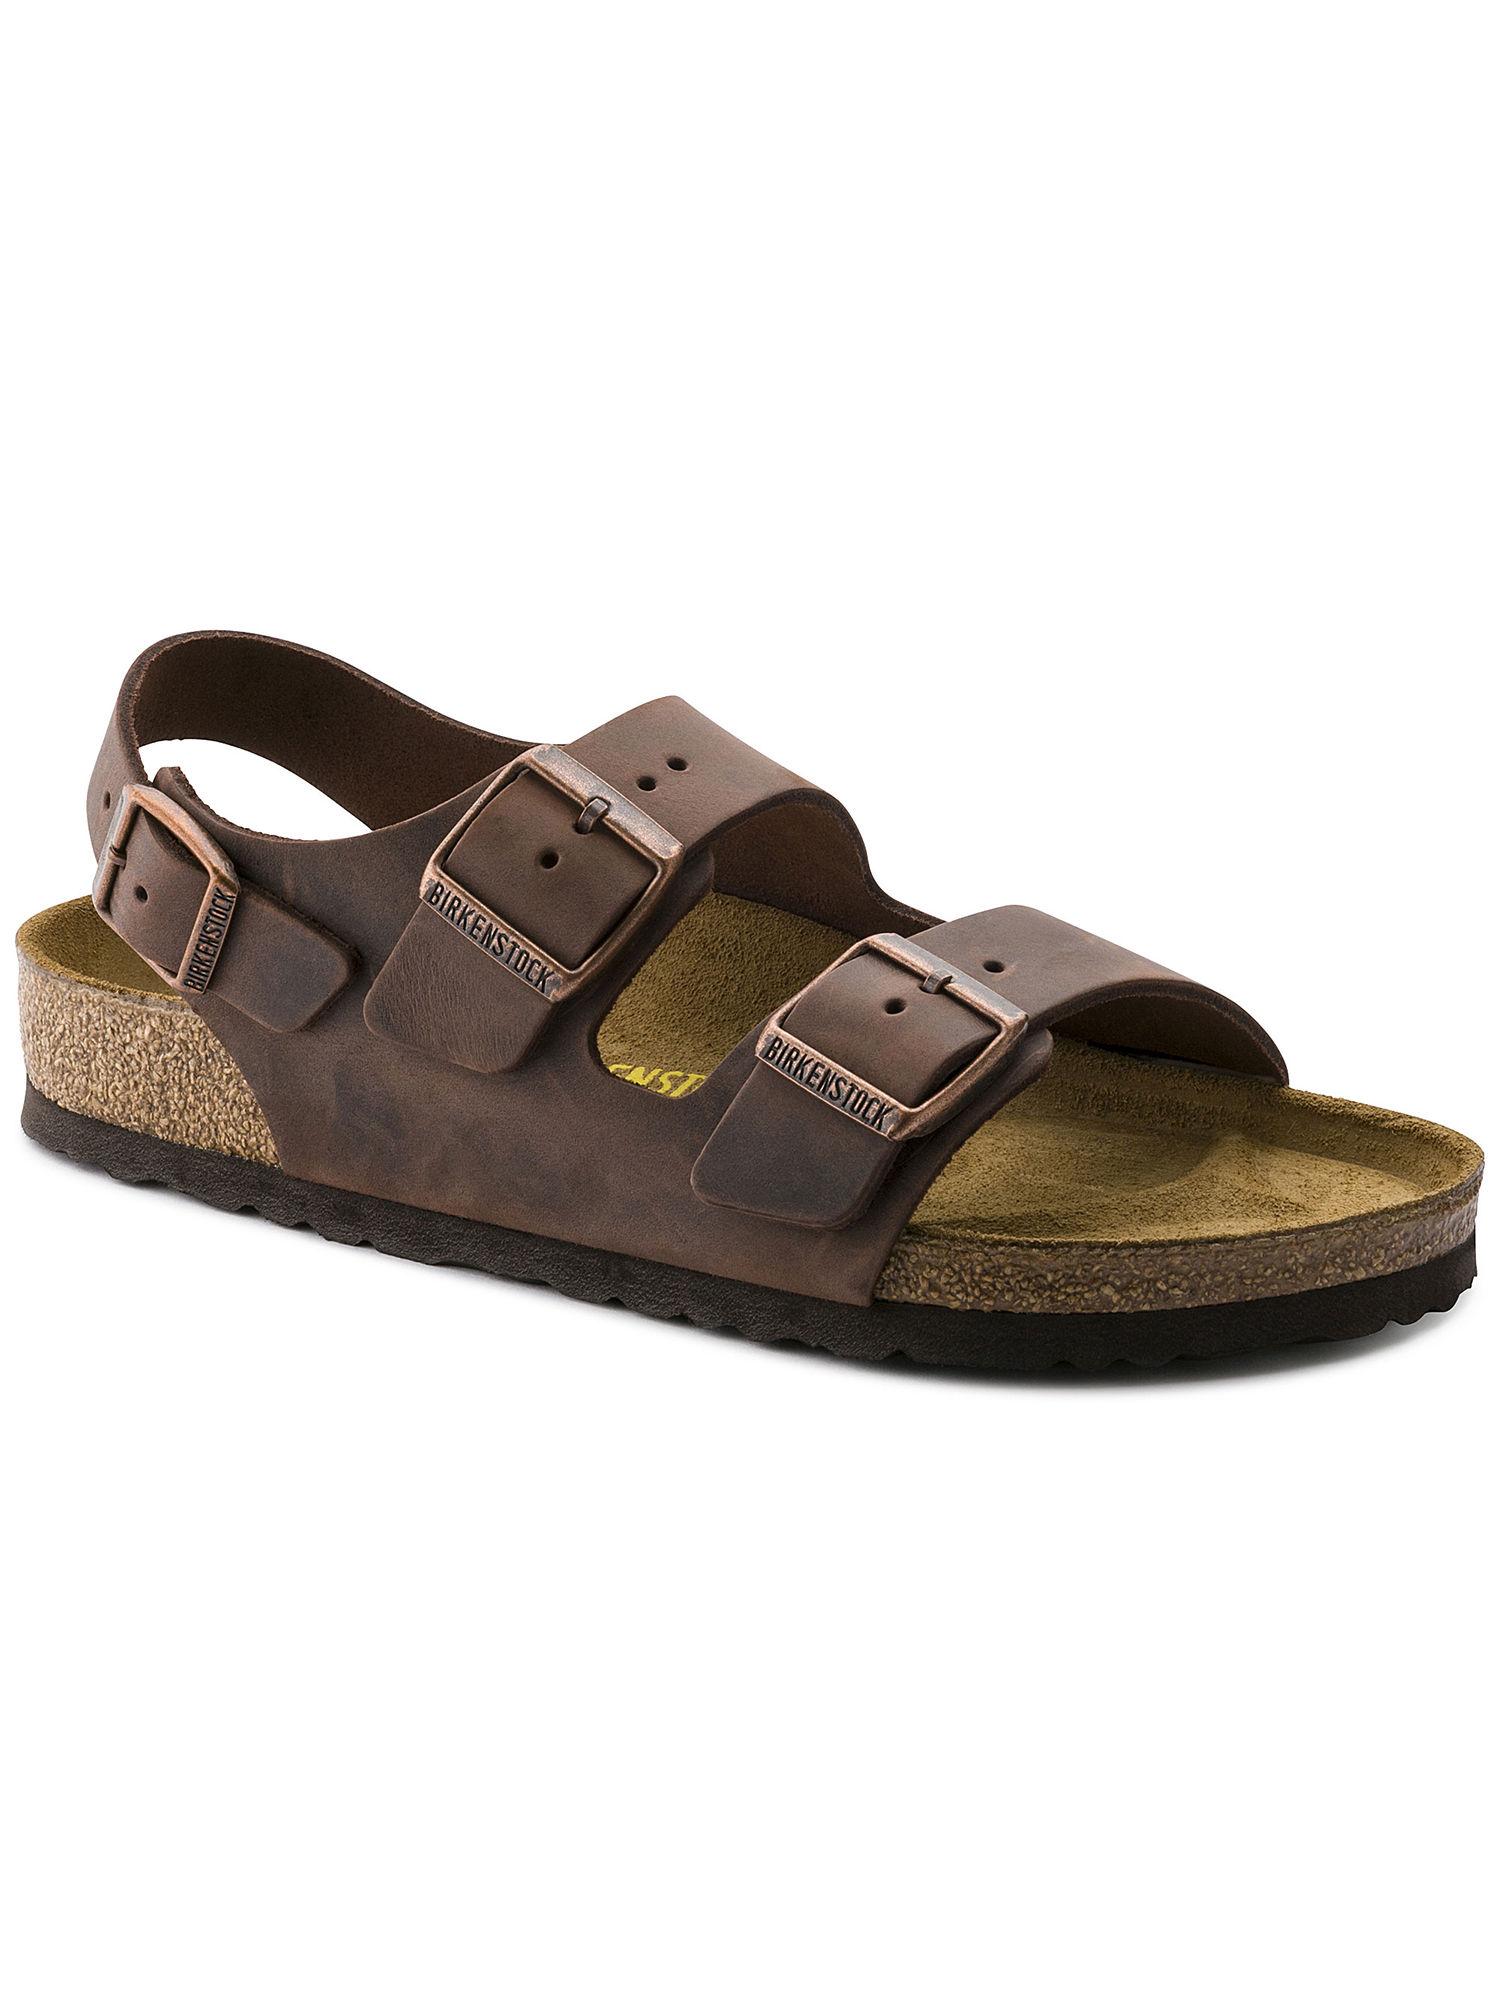 milano-brown-solid-regular-width-sandals